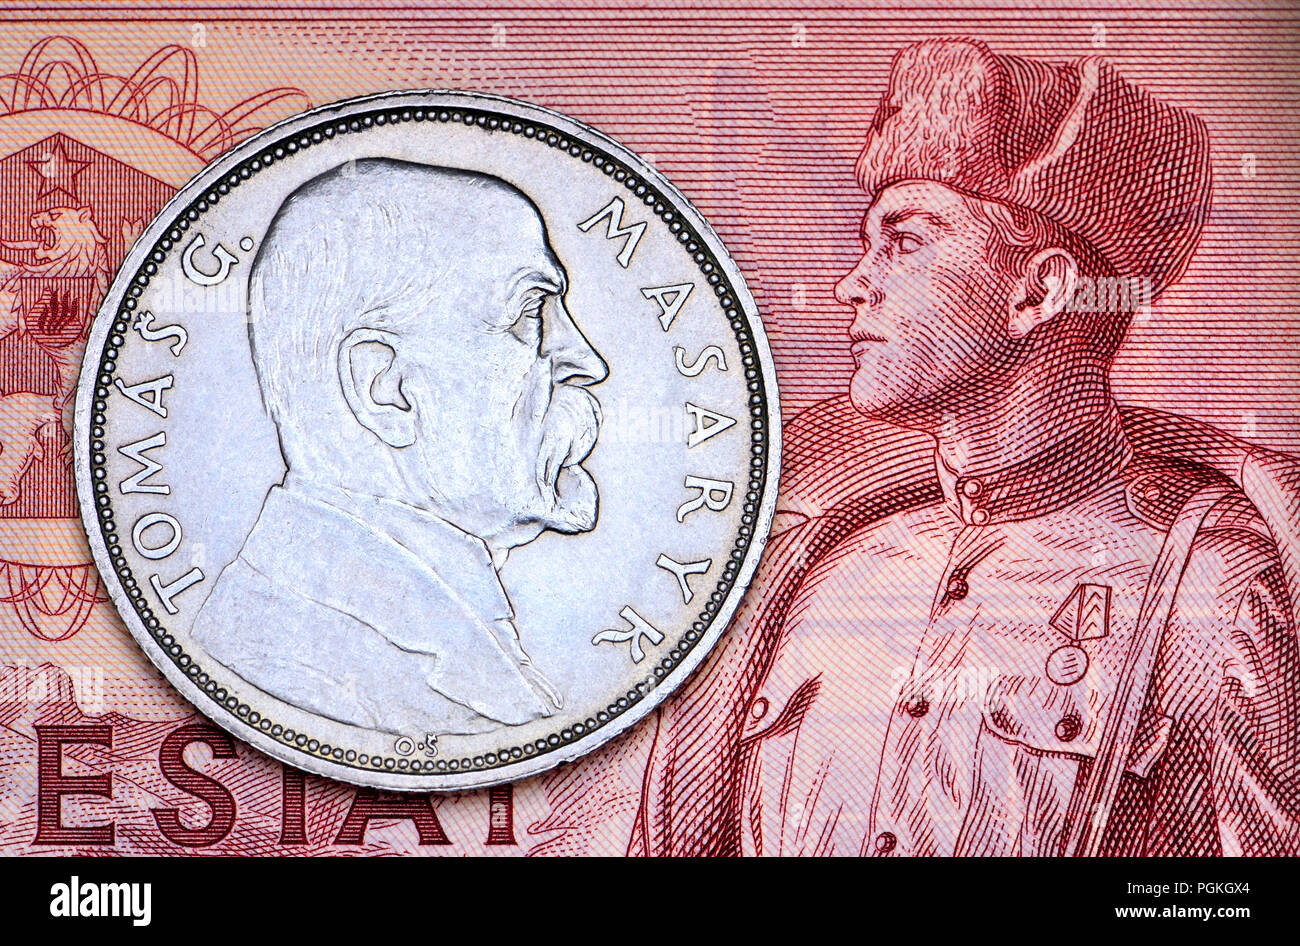 Tschechische Münzen und Banknoten: 1928 Tomas Masaryk Münze auf 1964 50 Kc Czecholsovakian bankote Stockfoto